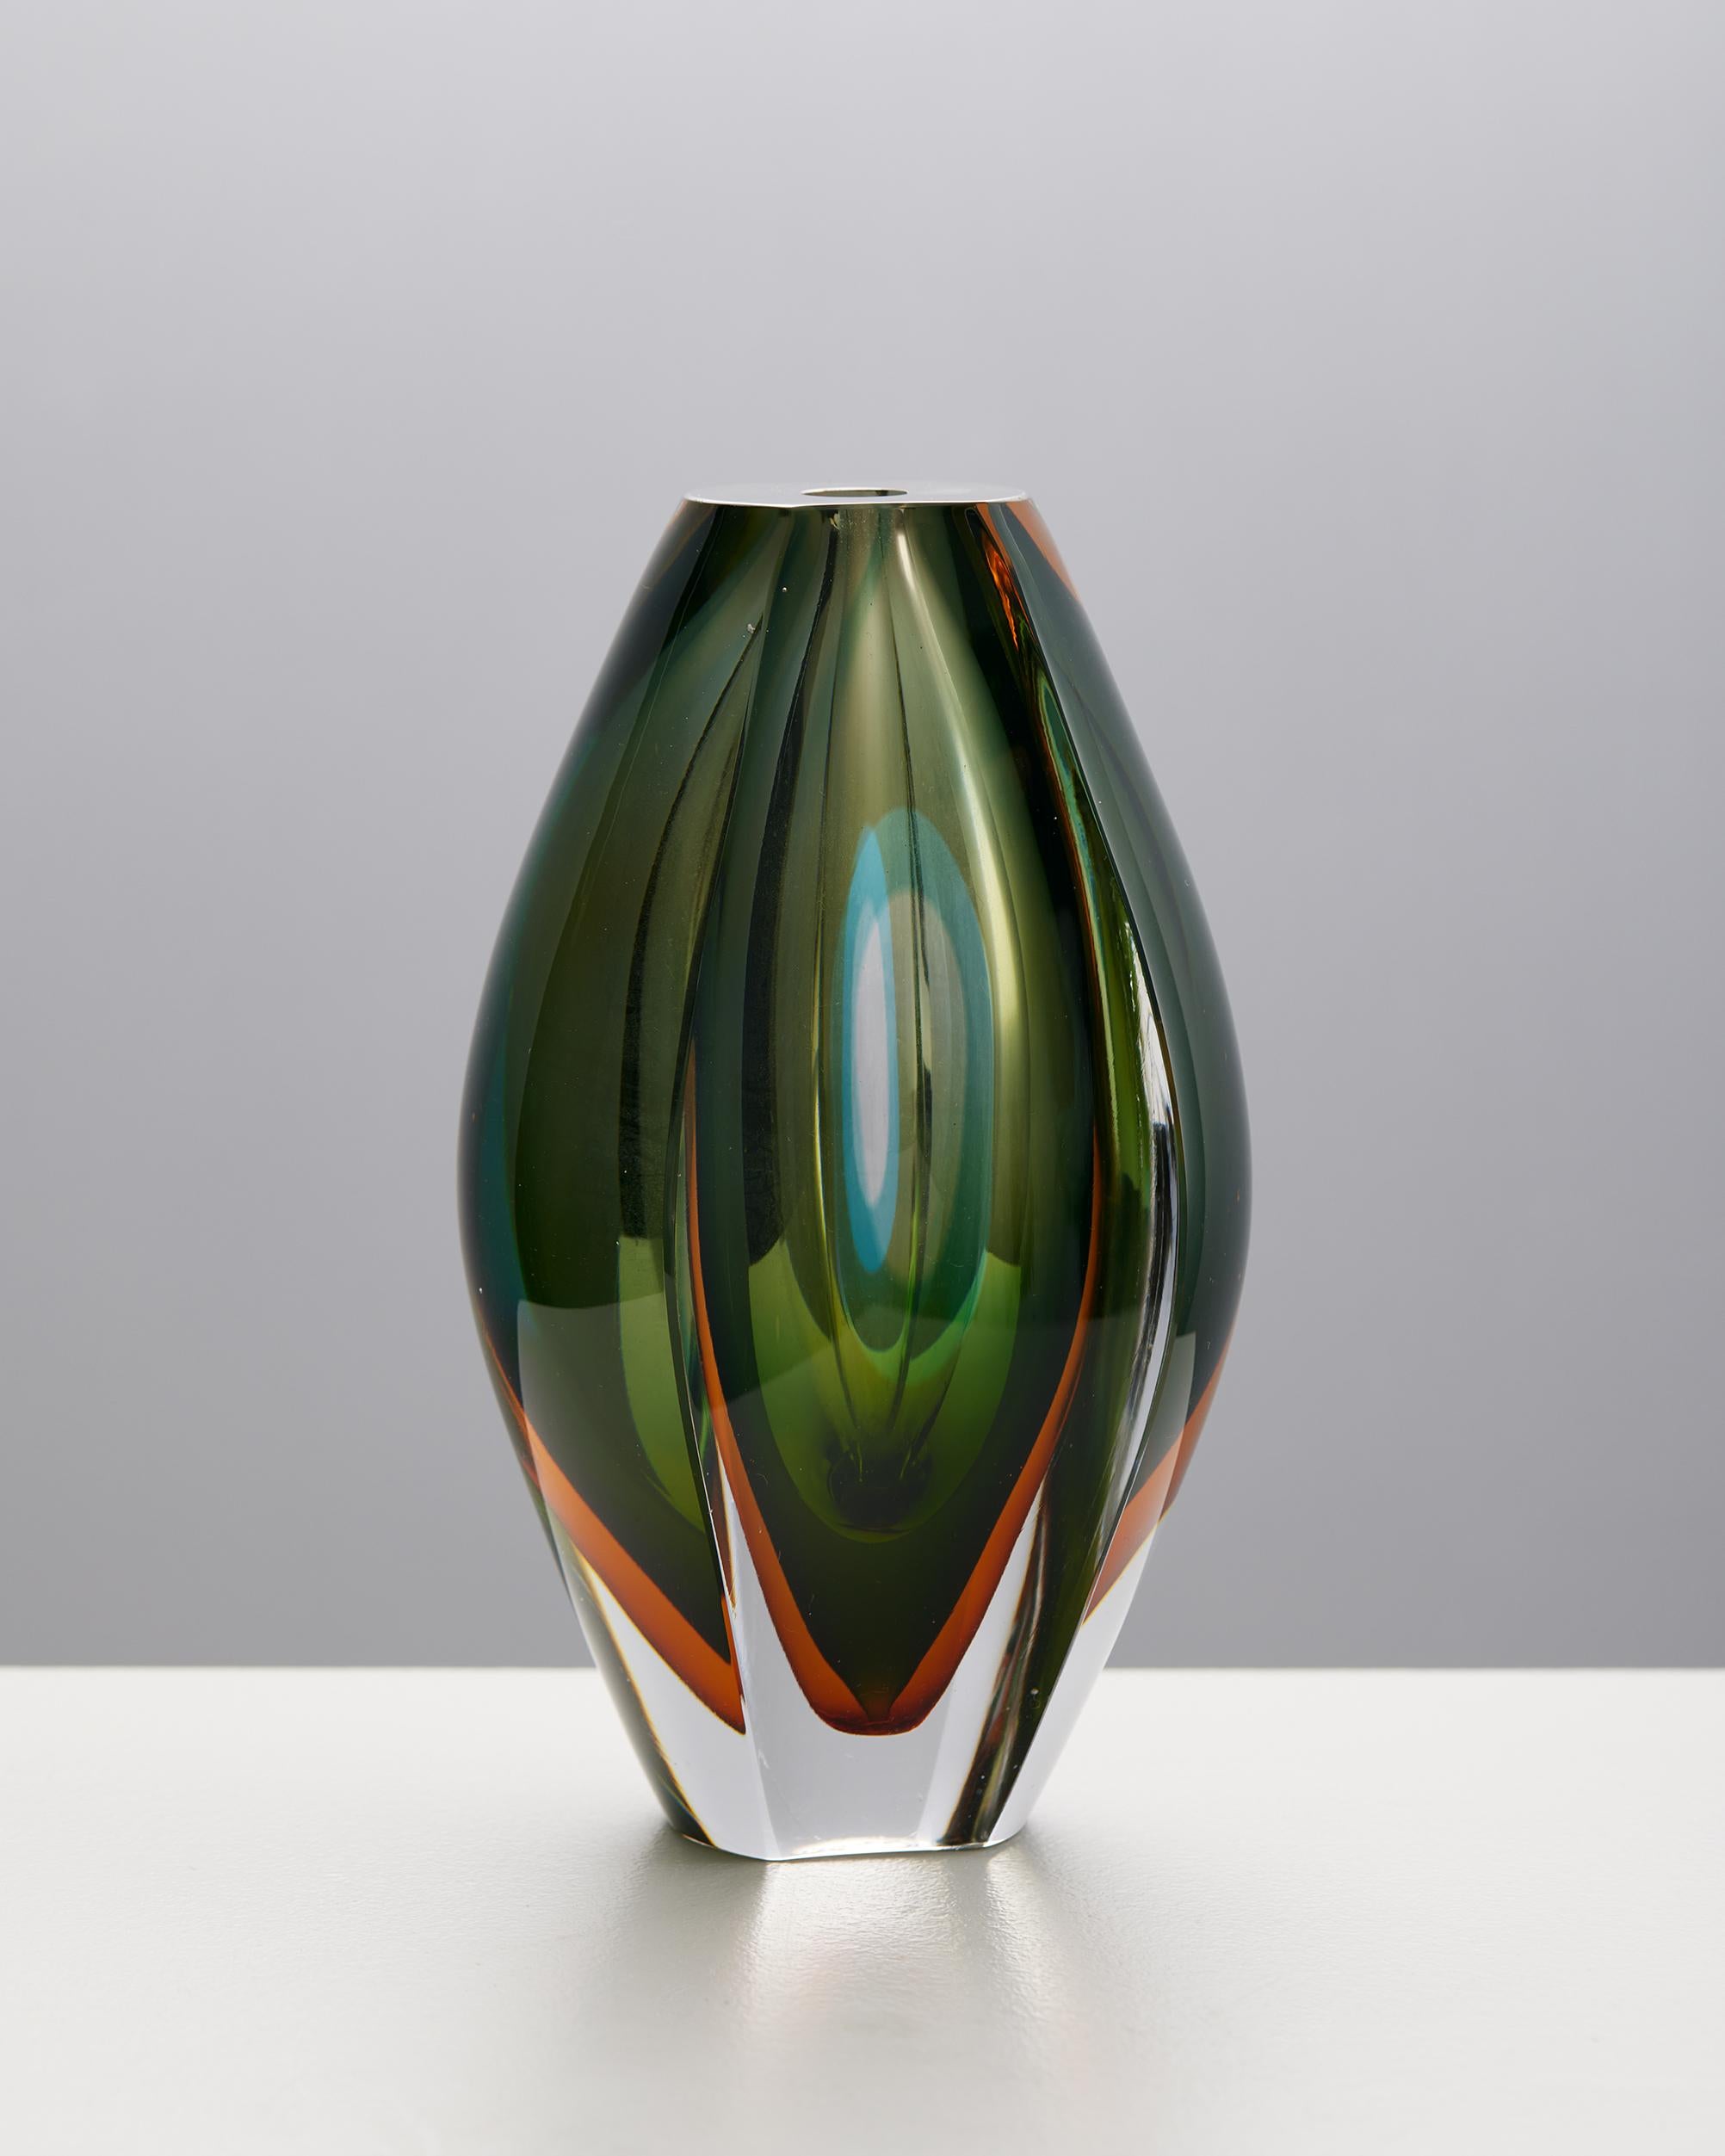 Vase „Ventana“ entworfen von Mona Morales-Schildt für Kosta, Schweden, 1950er Jahre
Unterschrieben.

Glas.

H: 16 cm
W: 10 cm
T: 8.5 cm